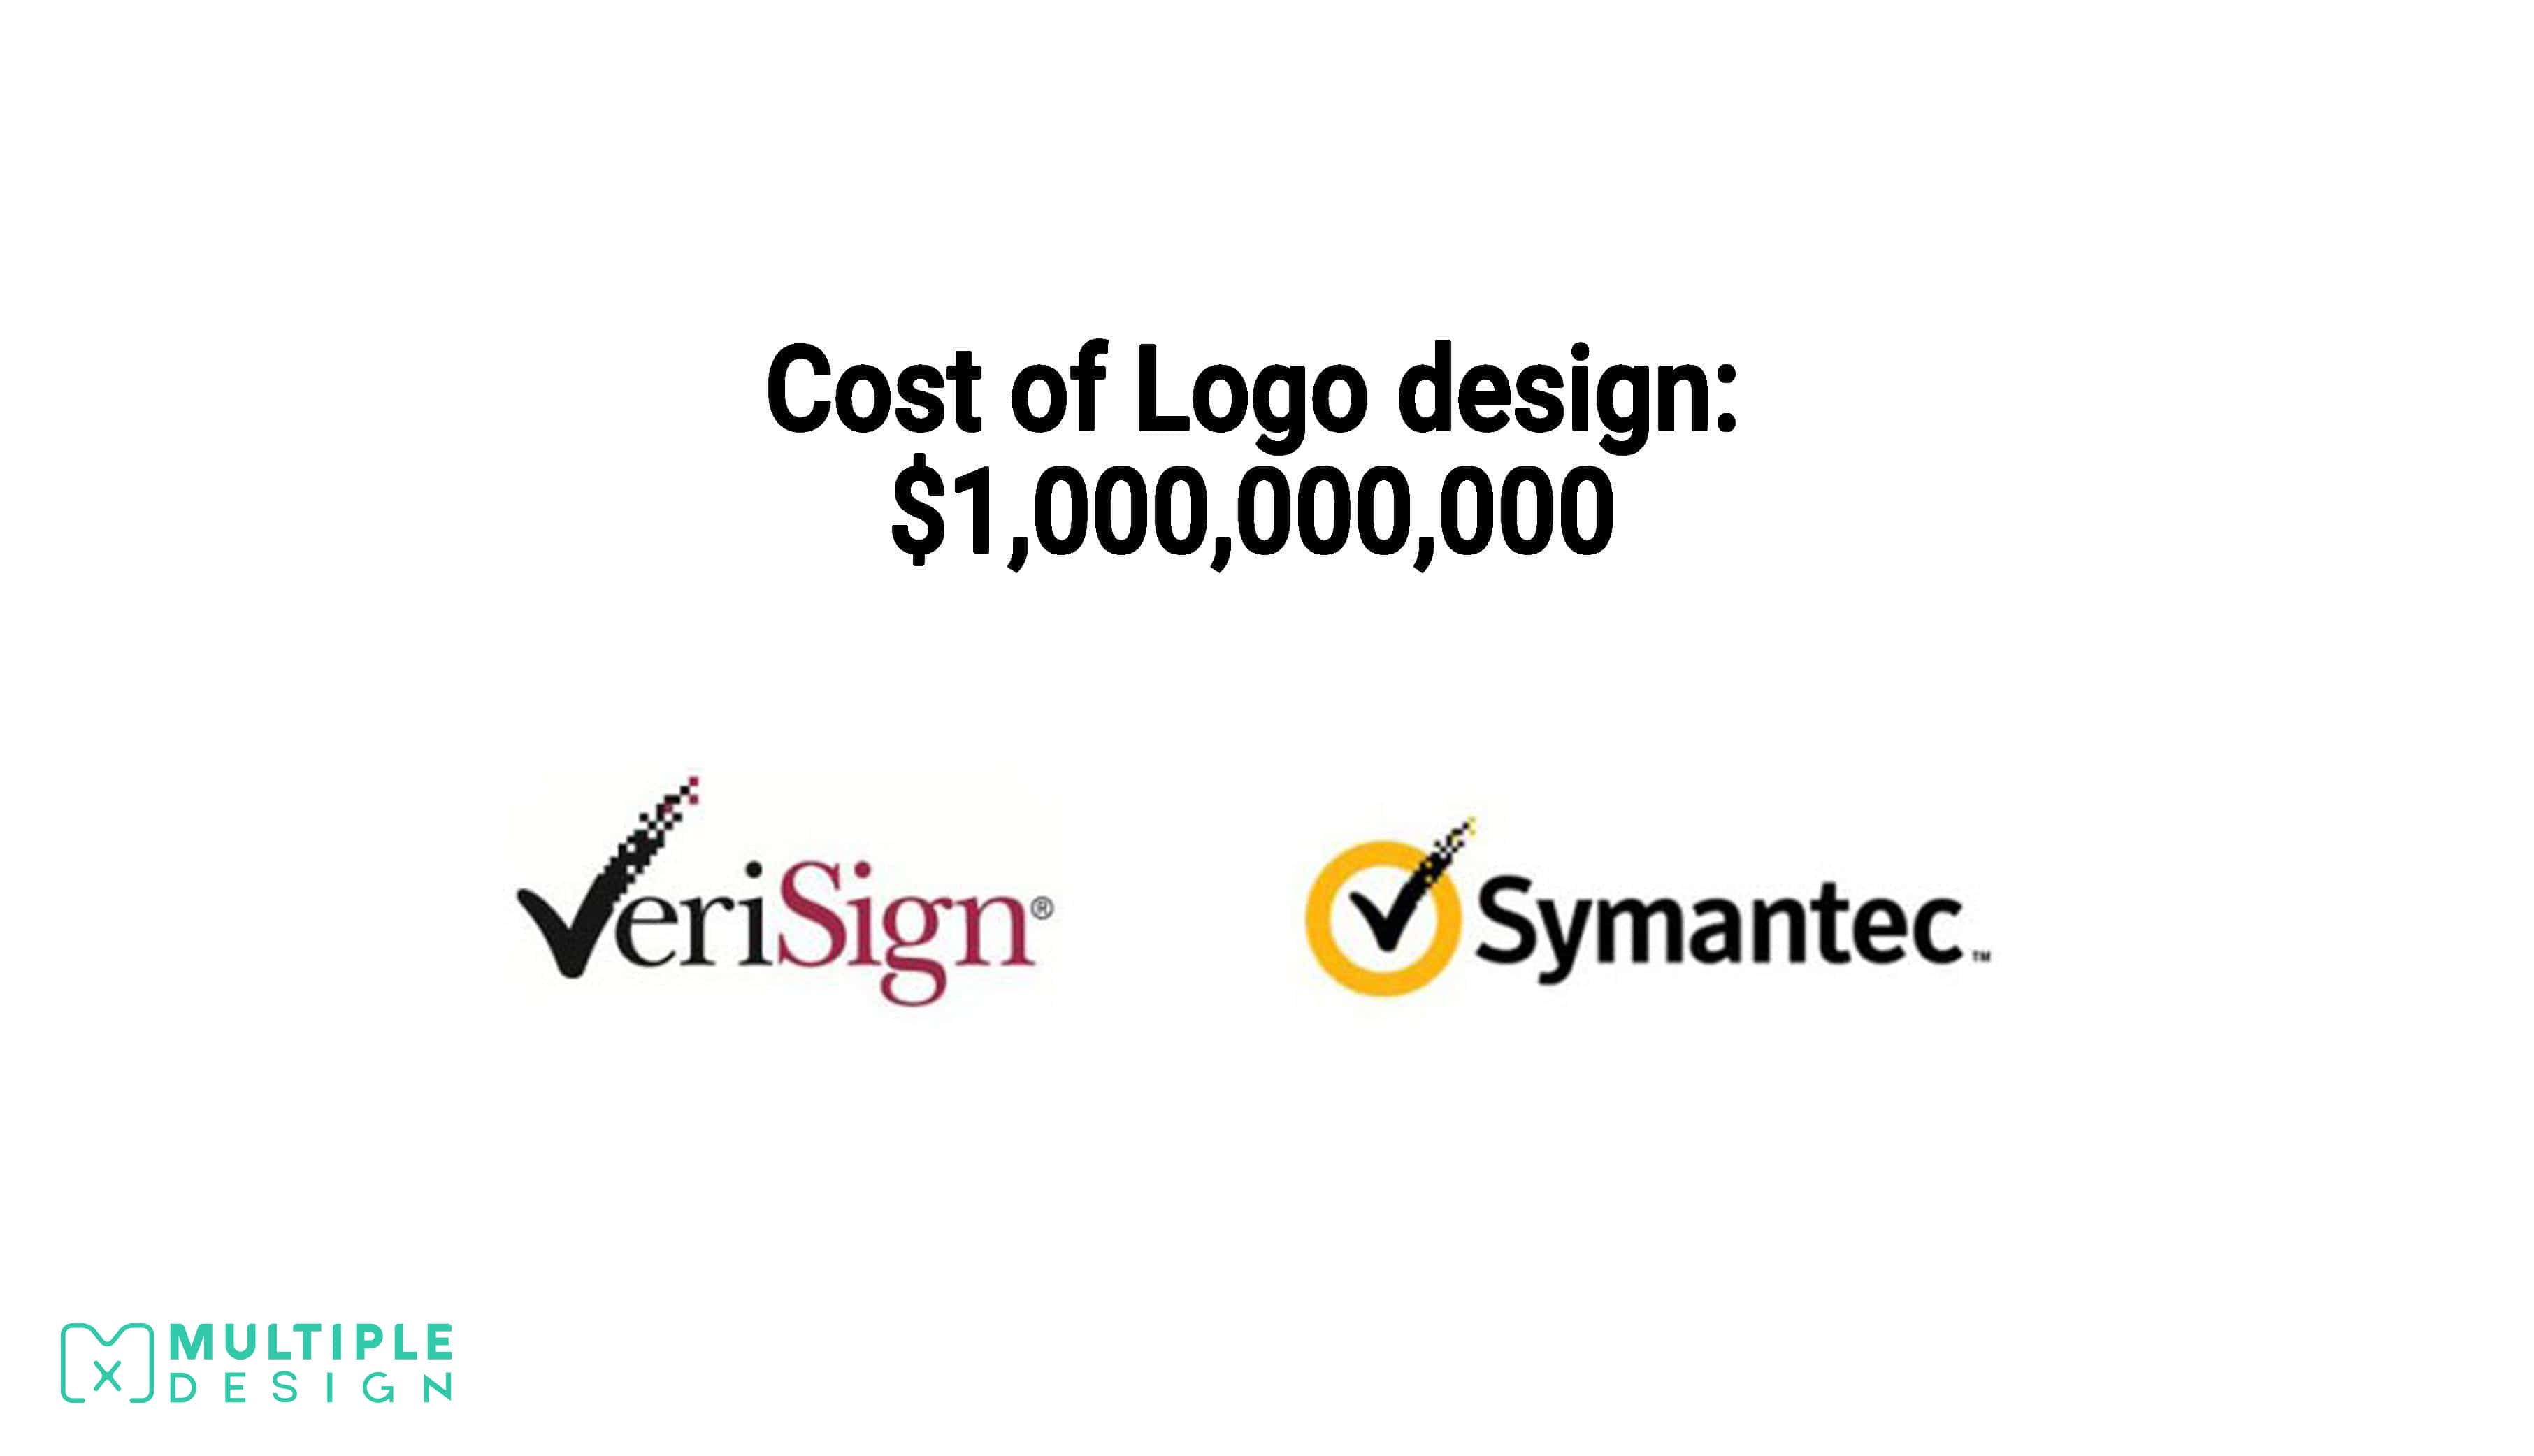 symantec redesign $1,000,000,000 logo